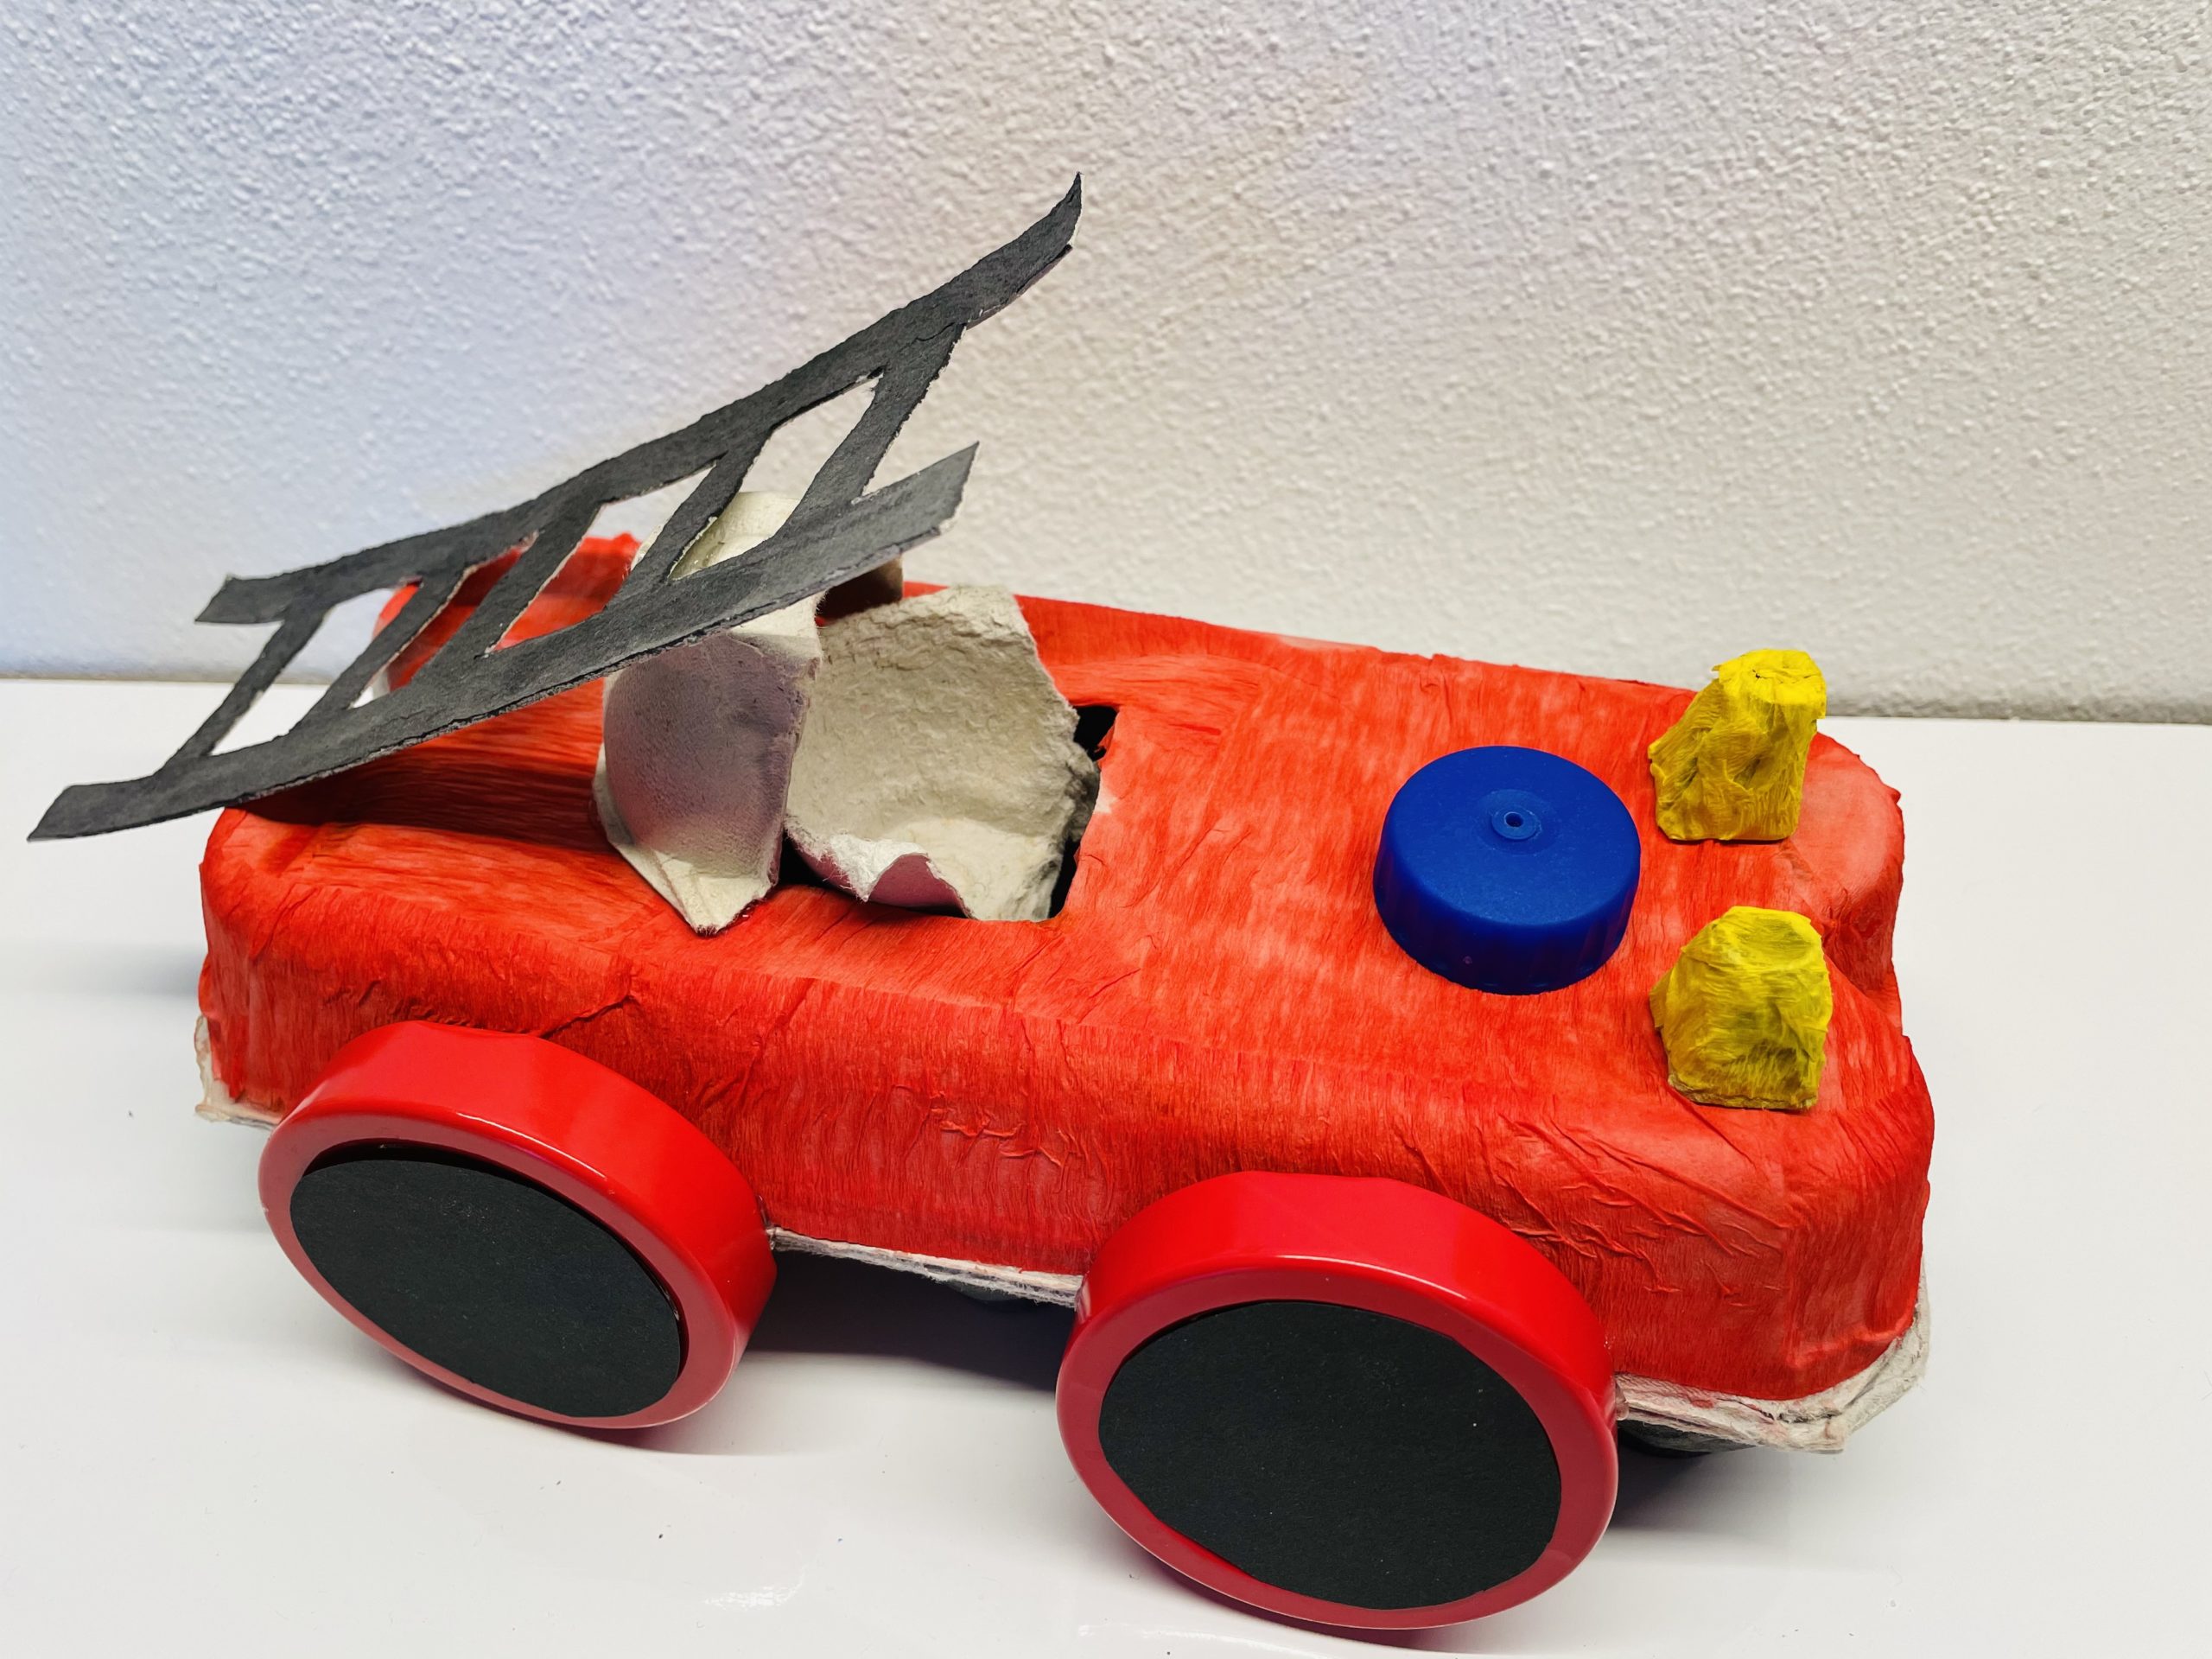 Bild zum Schritt 33 für die Kinder-Beschäftigung: 'Das Feuerwehrauto ist jetzt fertig zum Einsatz!'